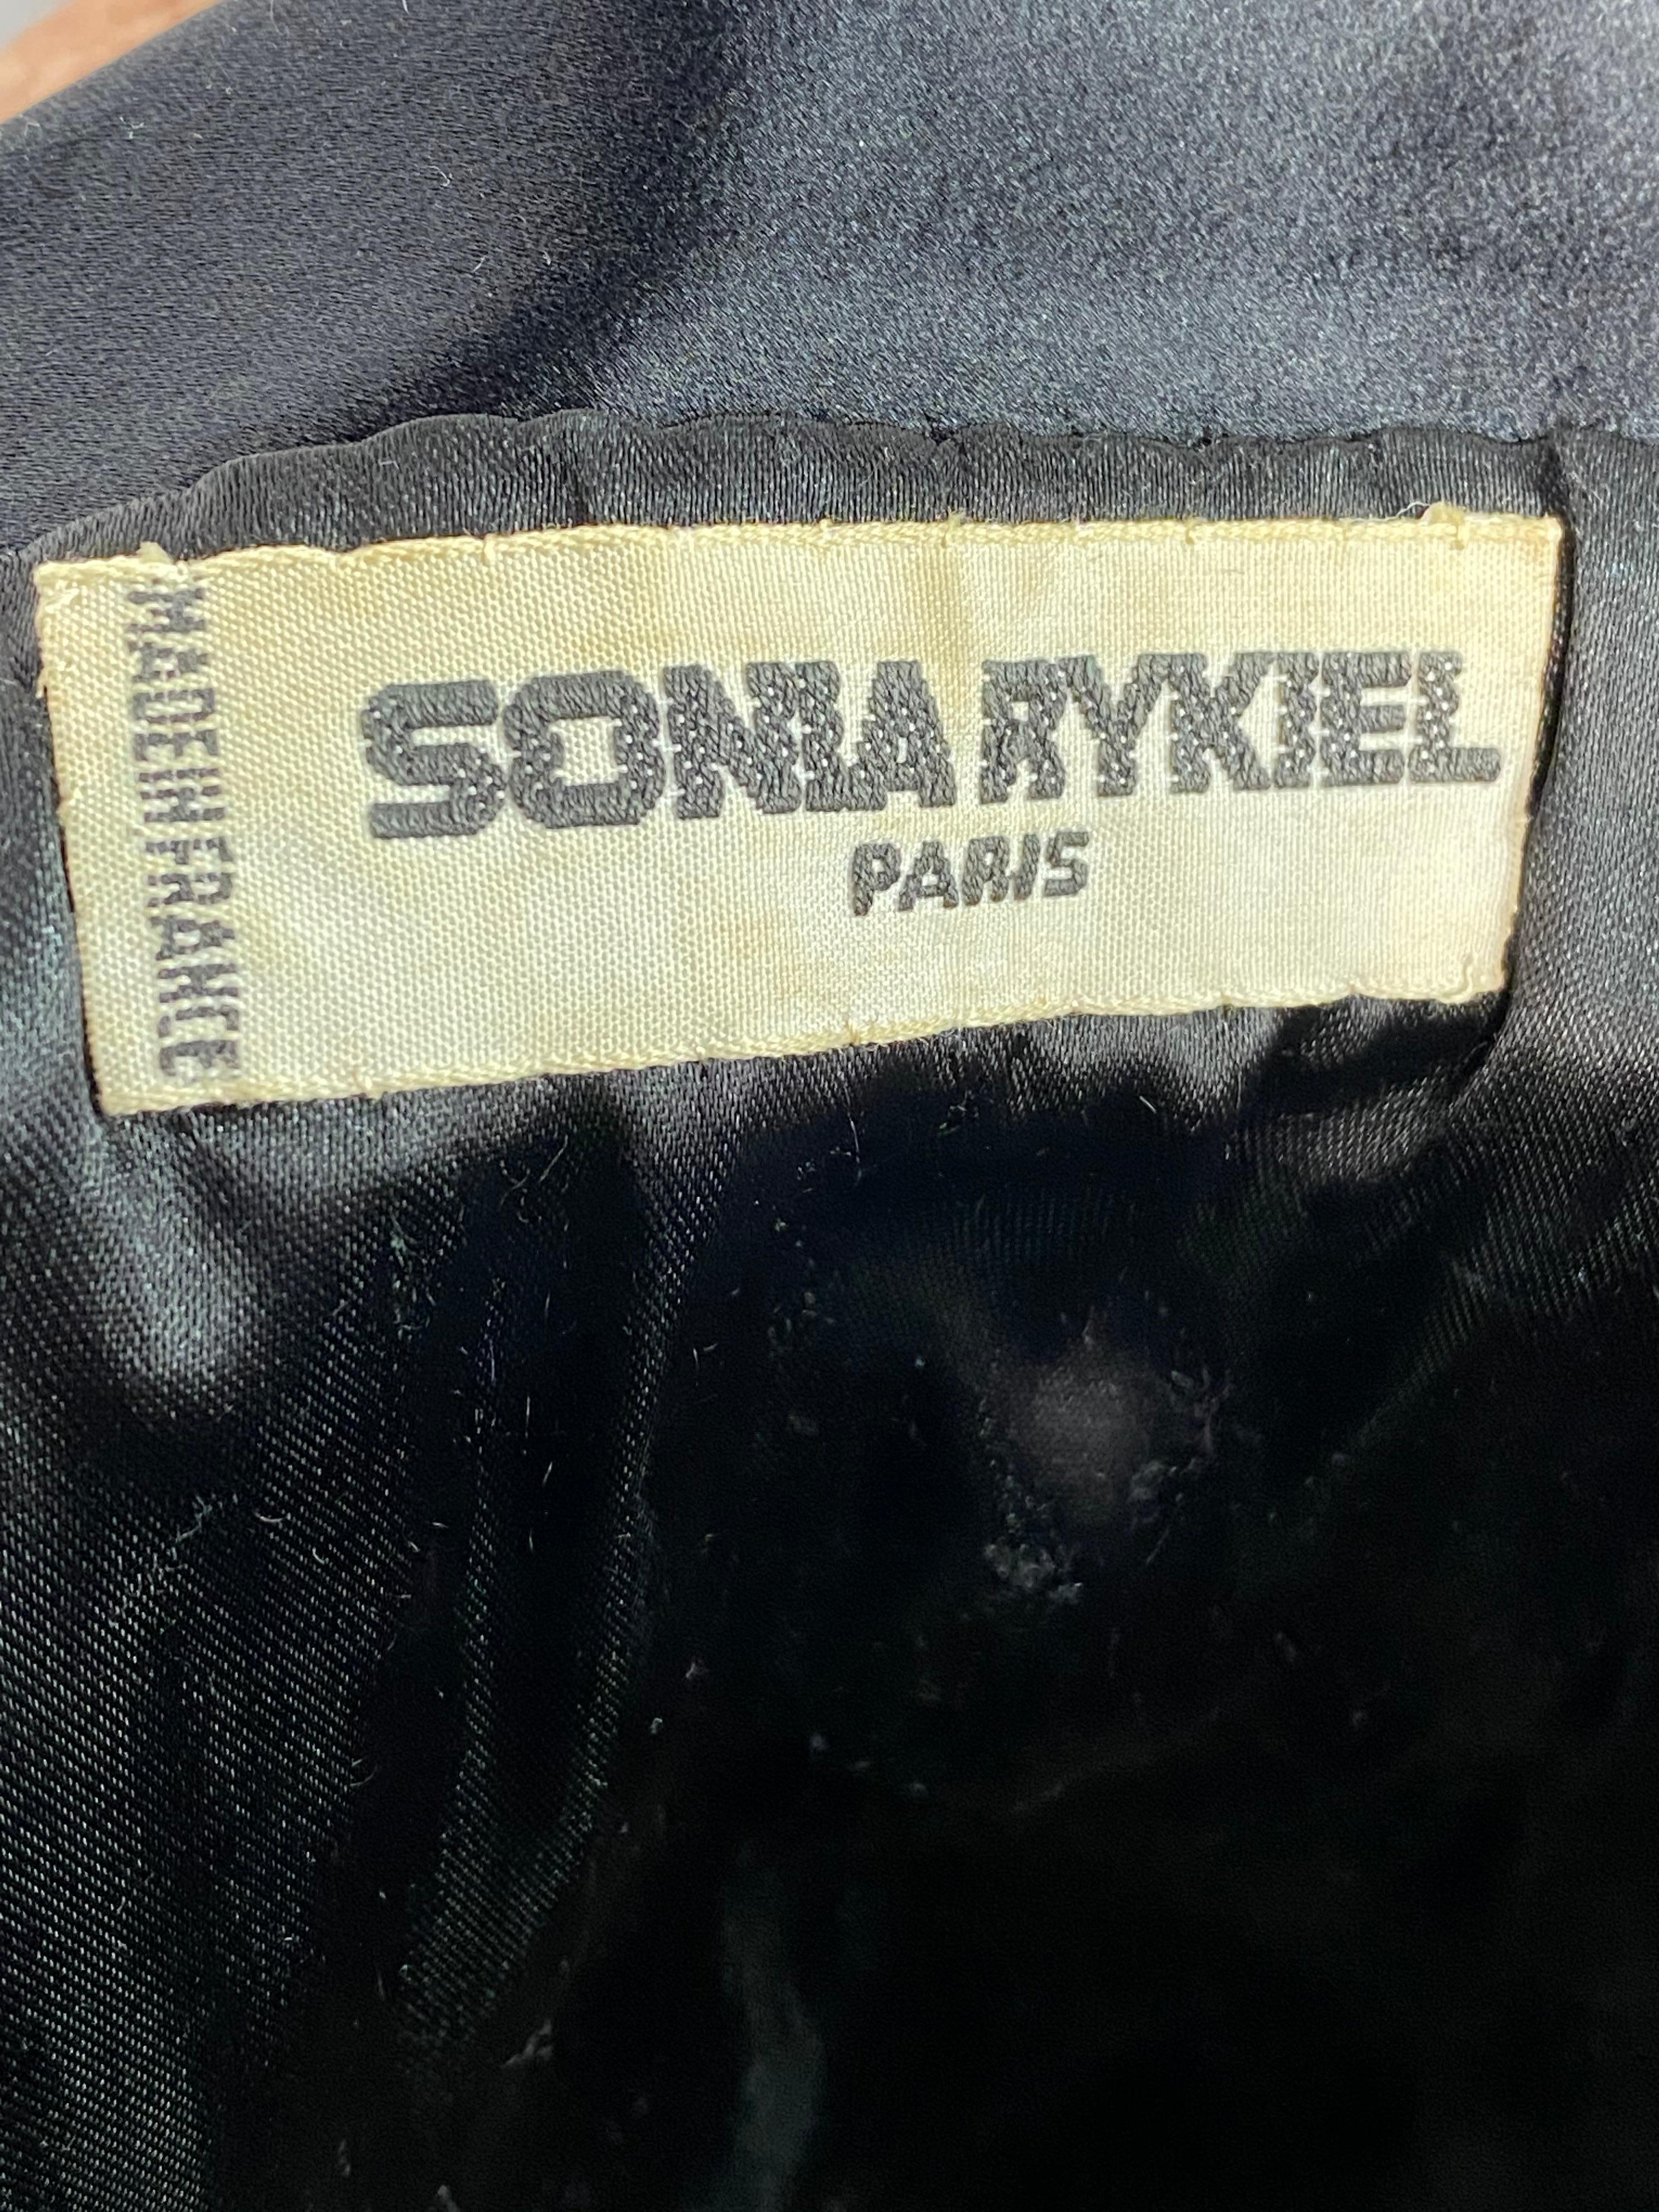 Sonia Rykiel Black Wool Blazer Jacket Size 38 For Sale 6